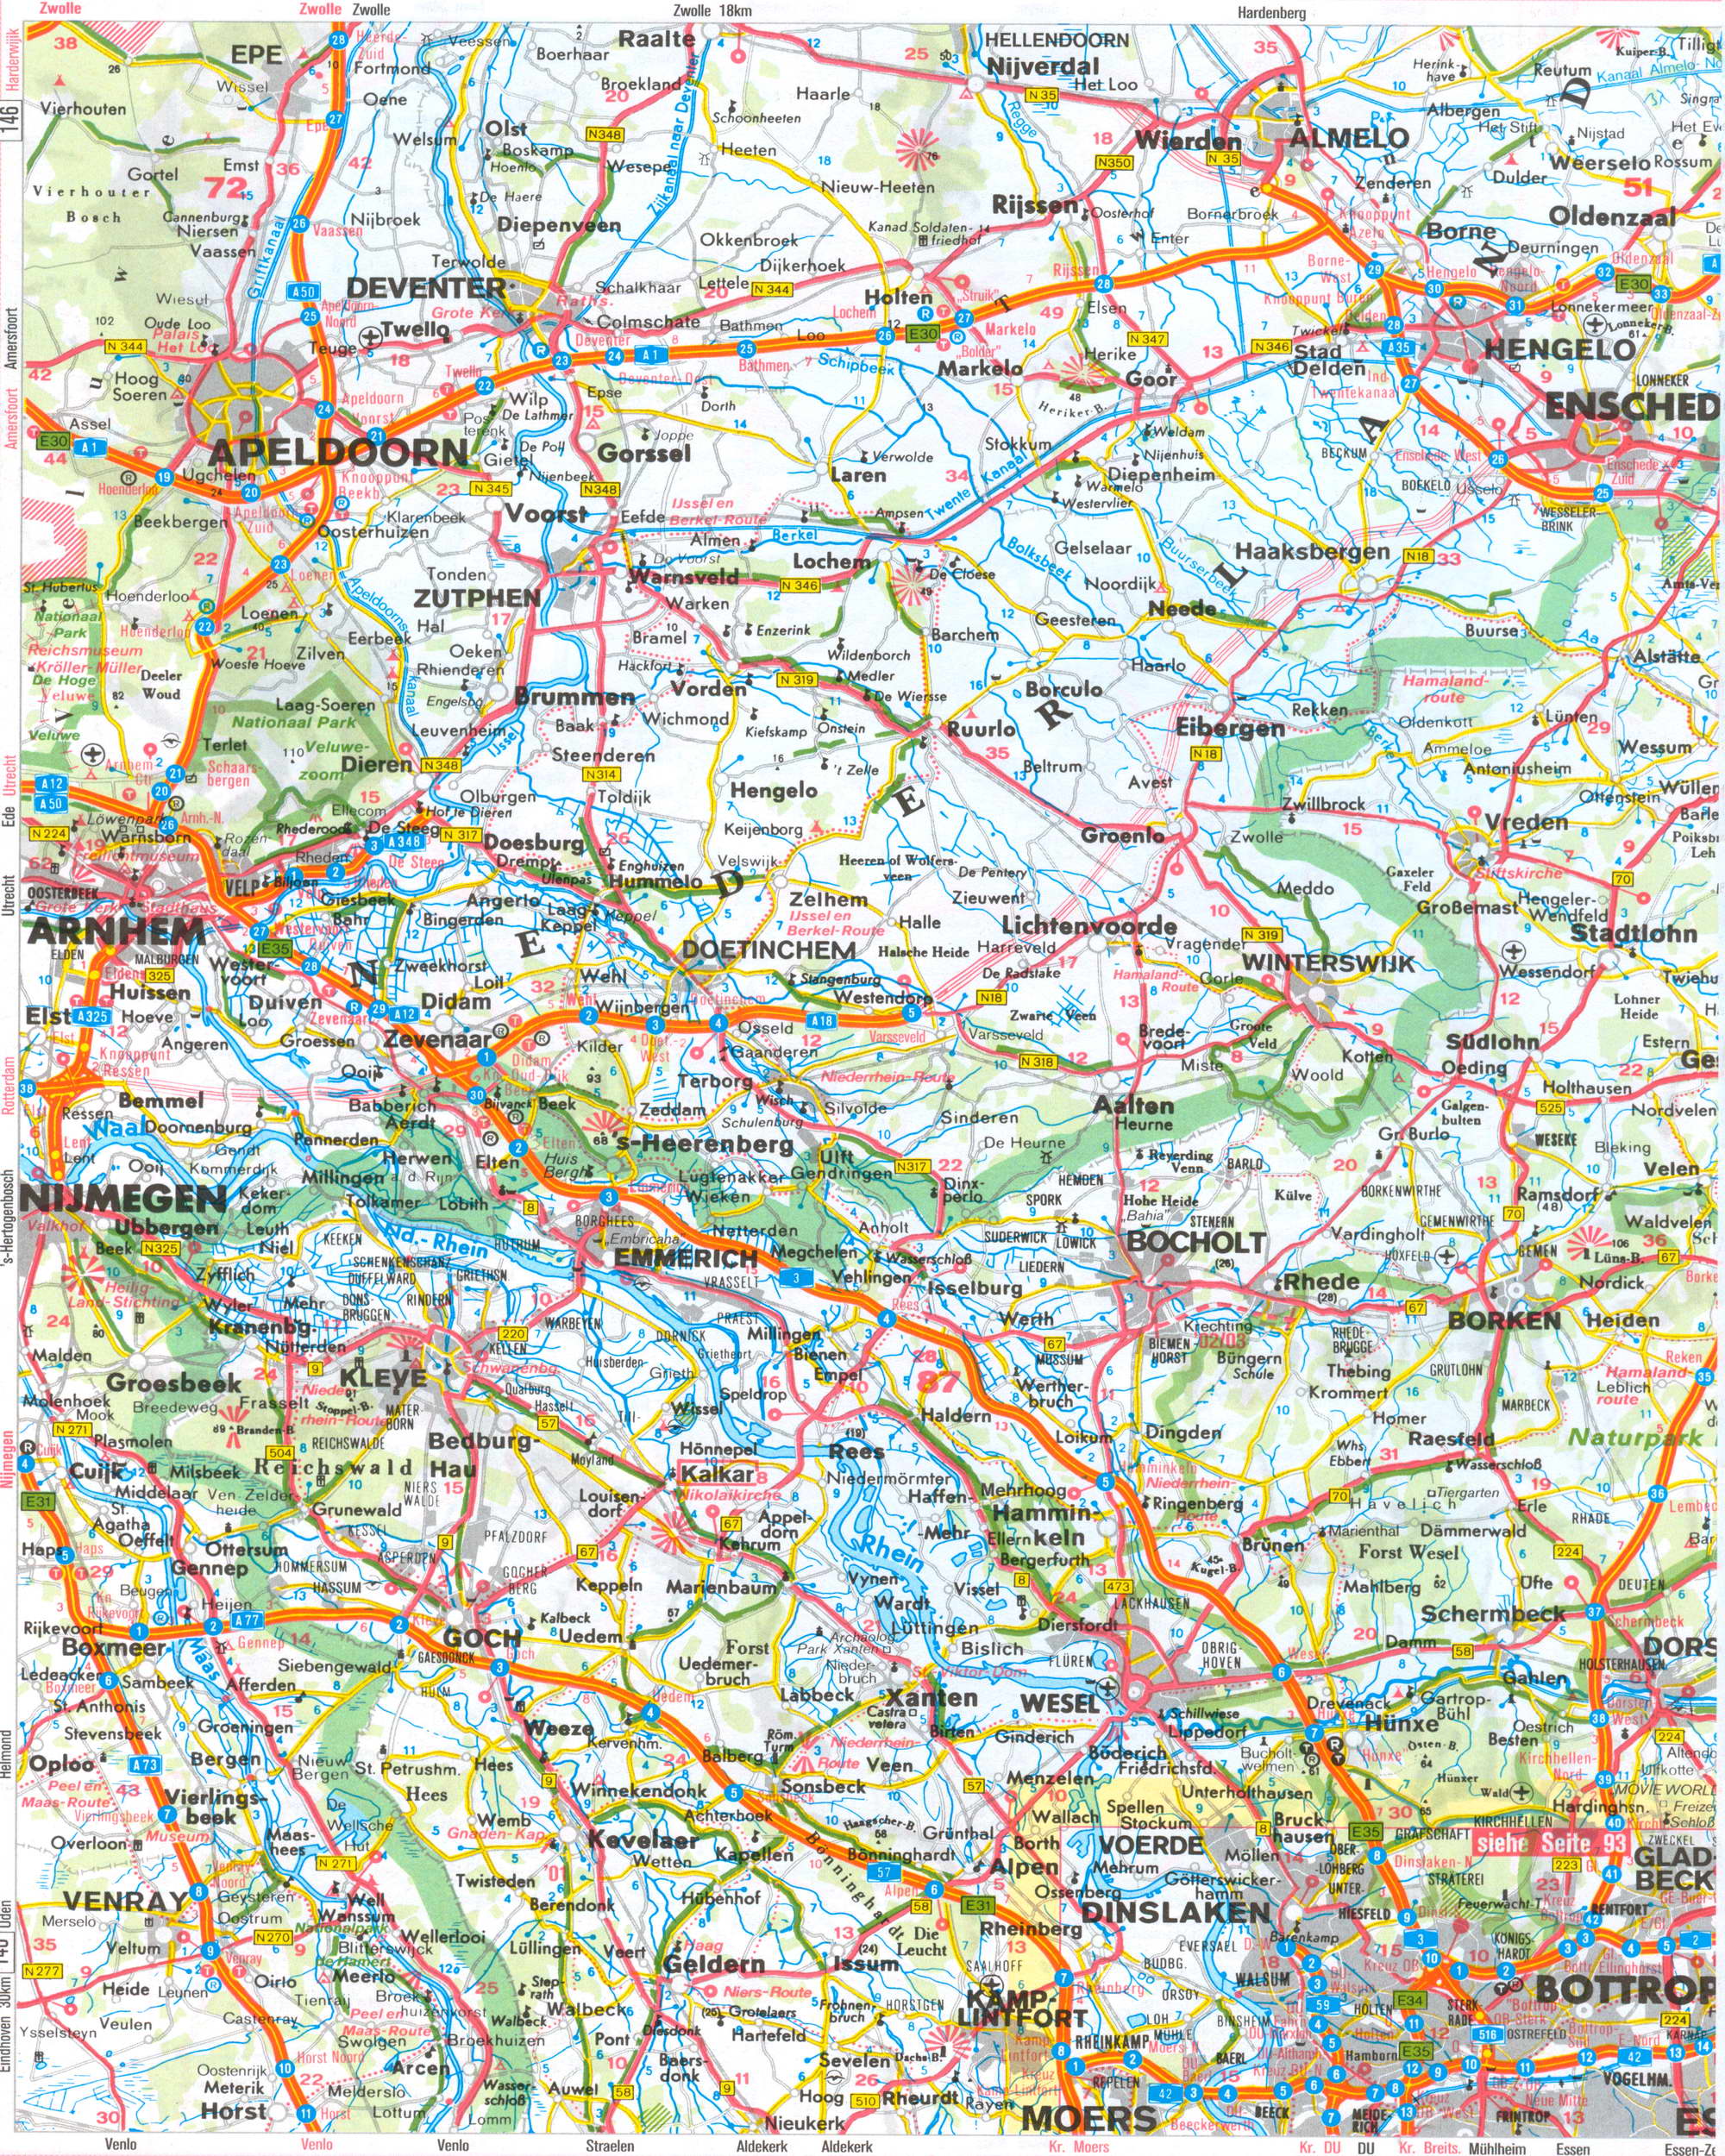  Автомобильная карта земли Северный Рейн - Вестфалия. Подробная карта земли Северный Рейн-Вестфалия, A0 - 